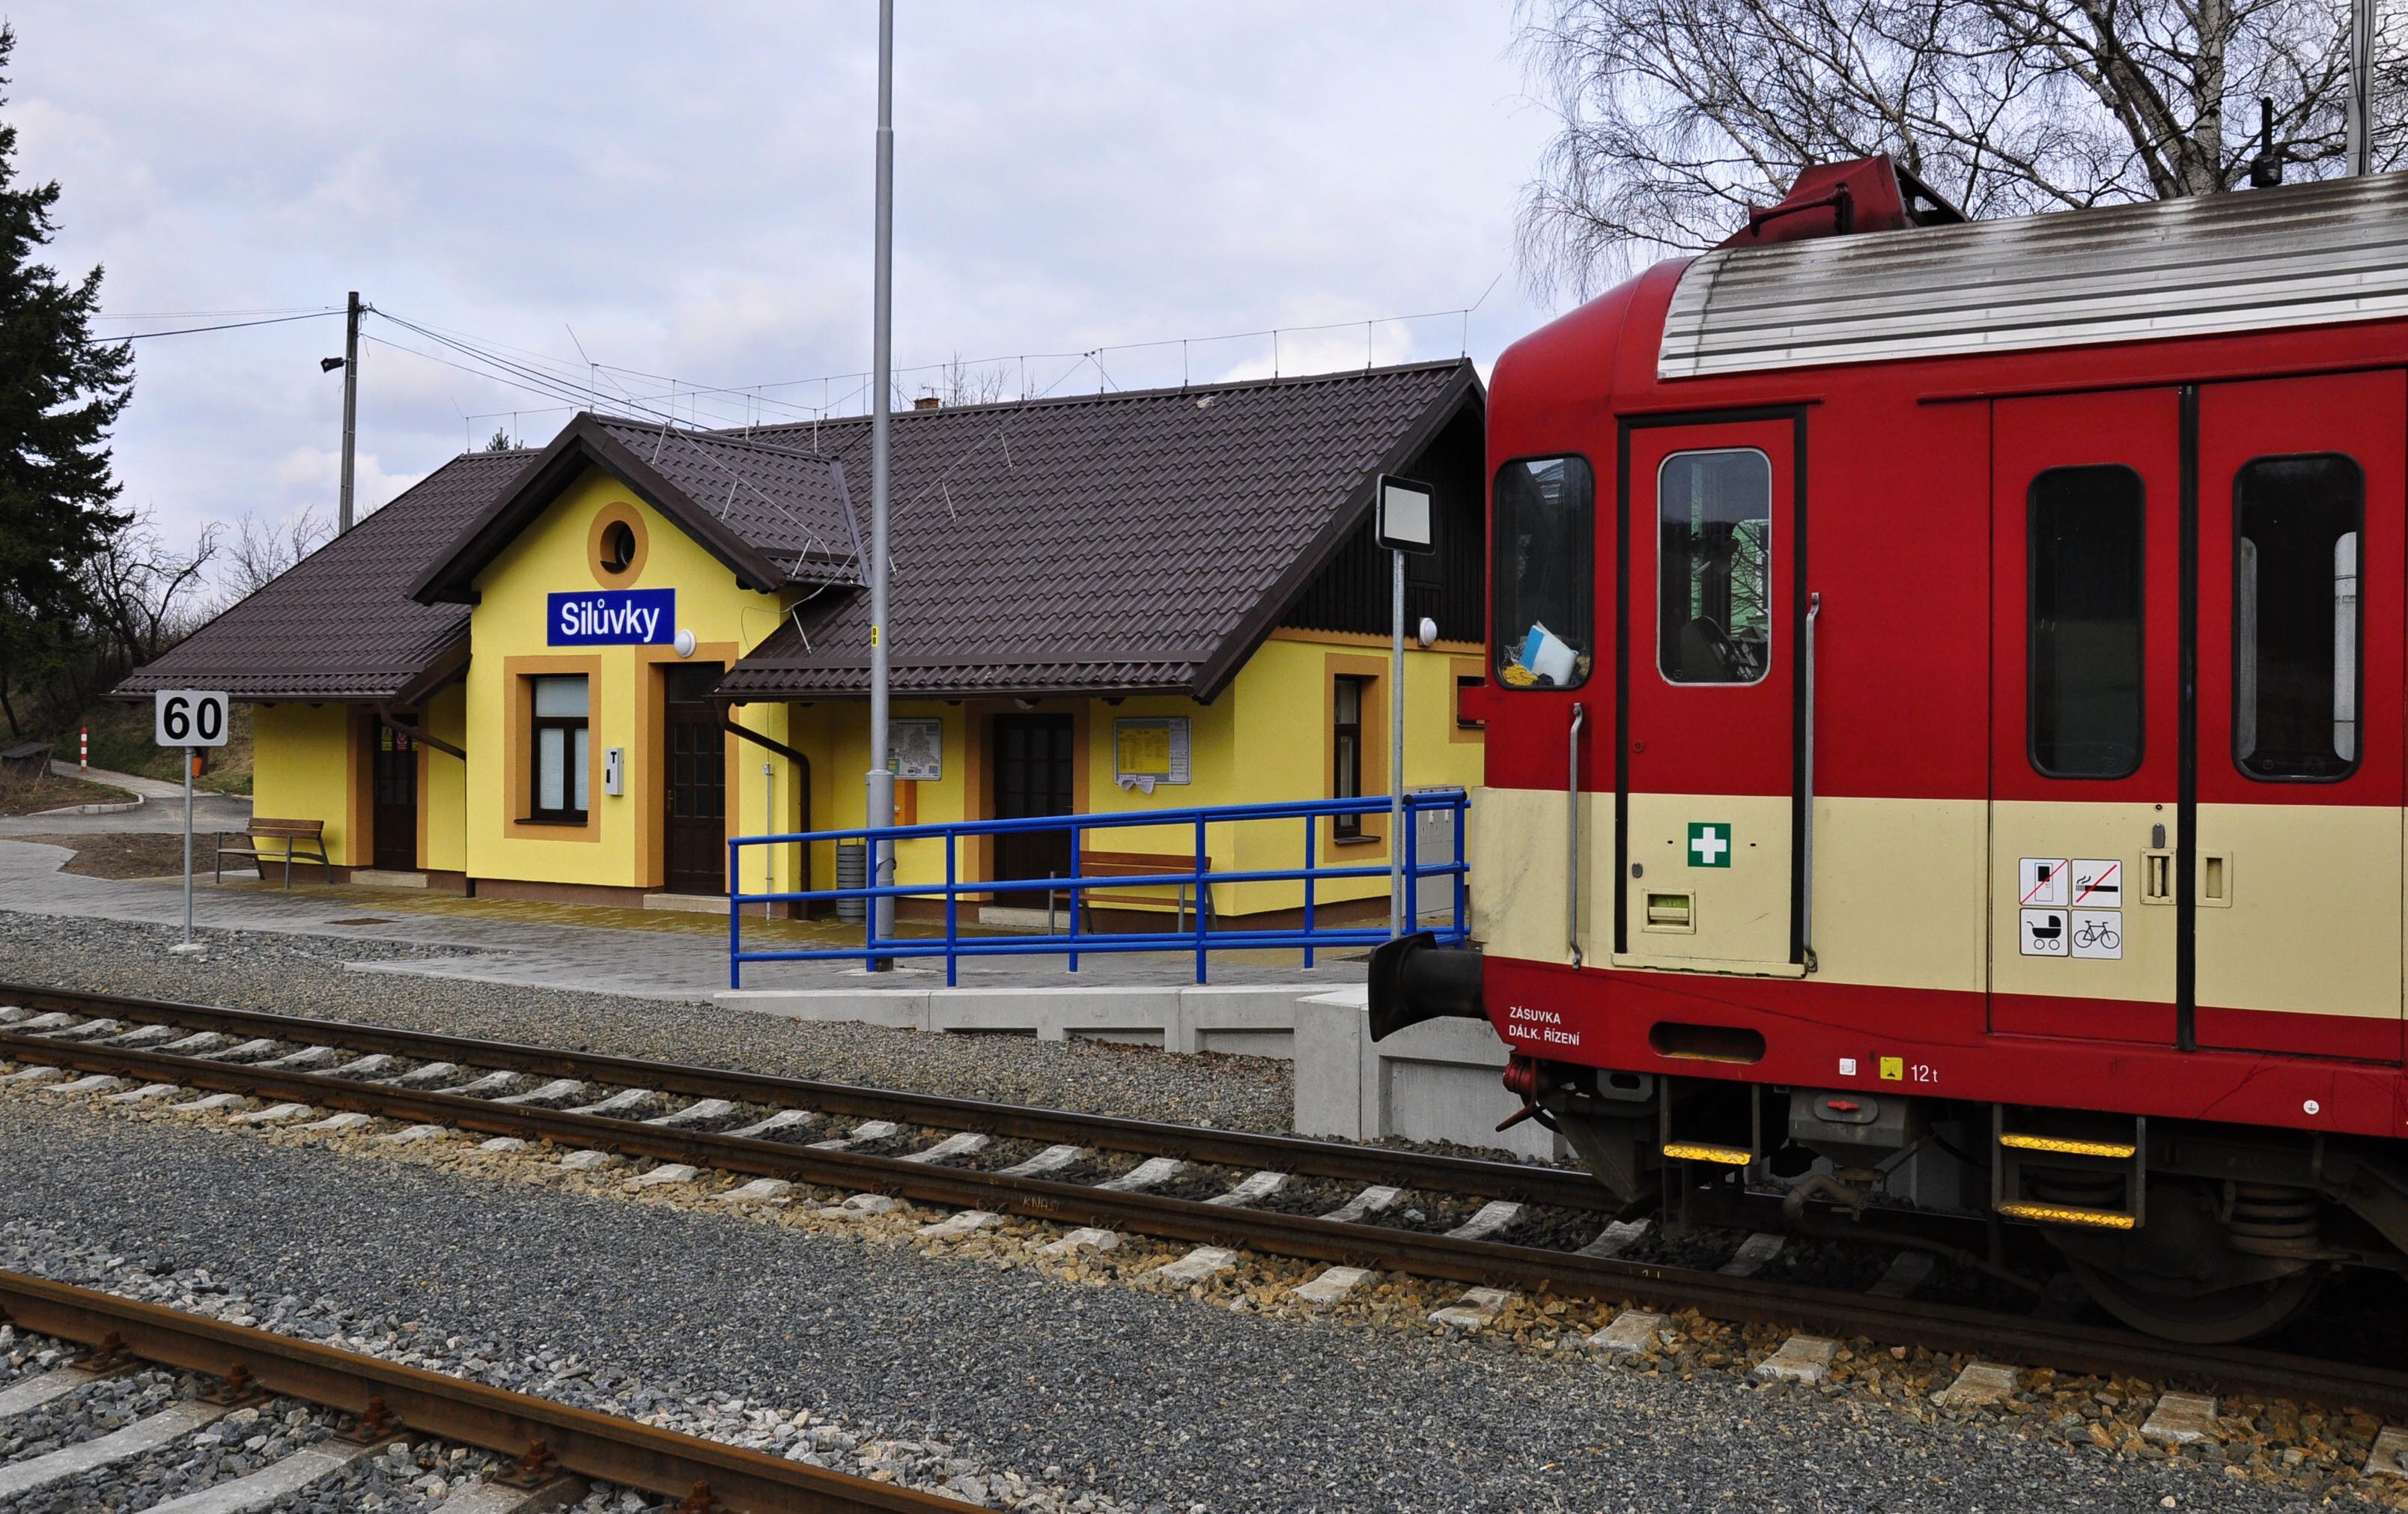 Železniční stanice Silůvky po rekonstrukci v roce 2010. Foto: Jan Rybníček.